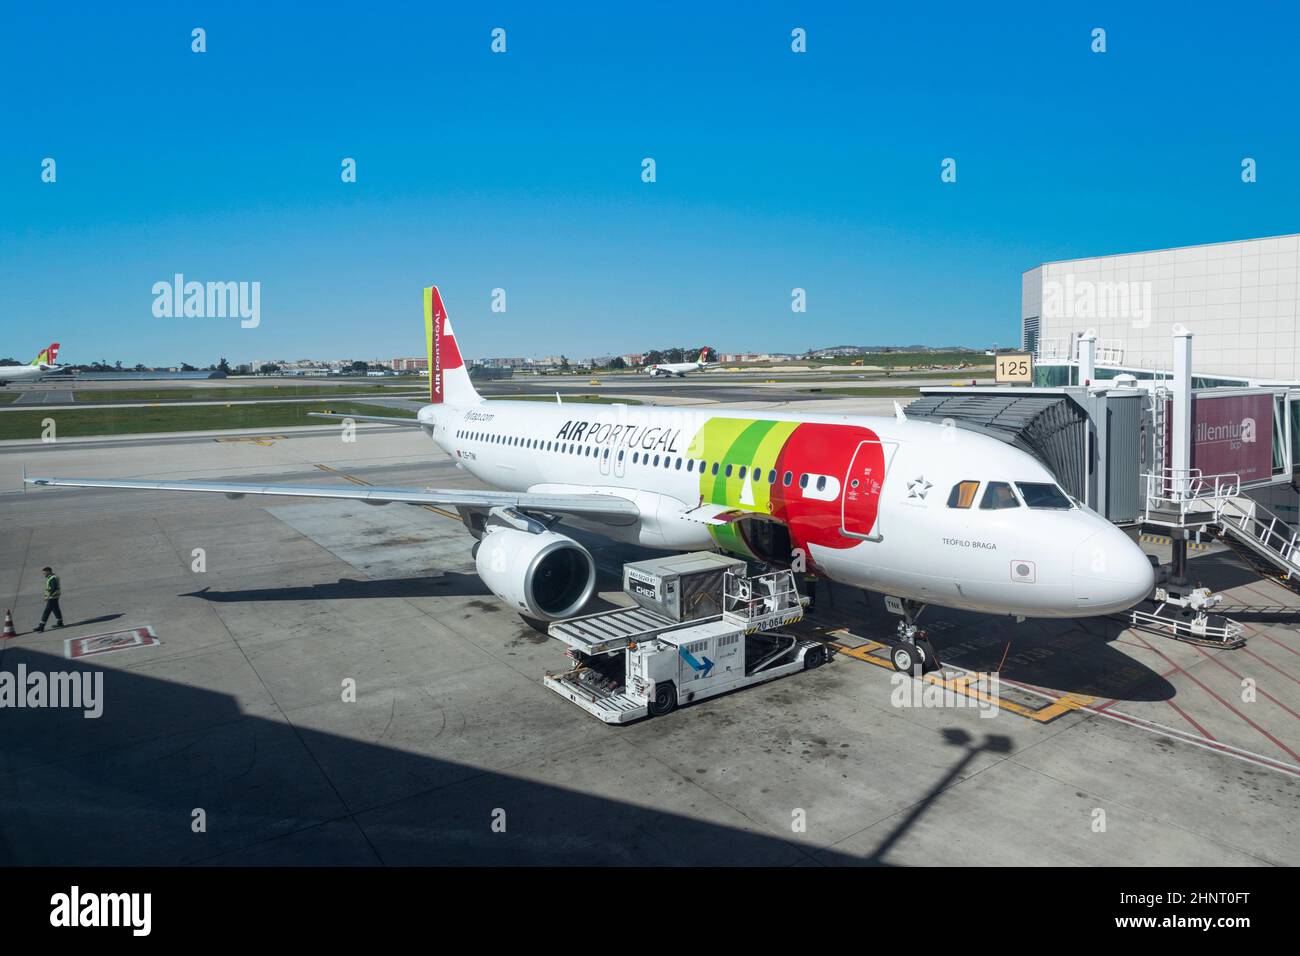 TAP aircraft at the gate ready for boarding at Lisbon airport Humberto Delgado Stock Photo